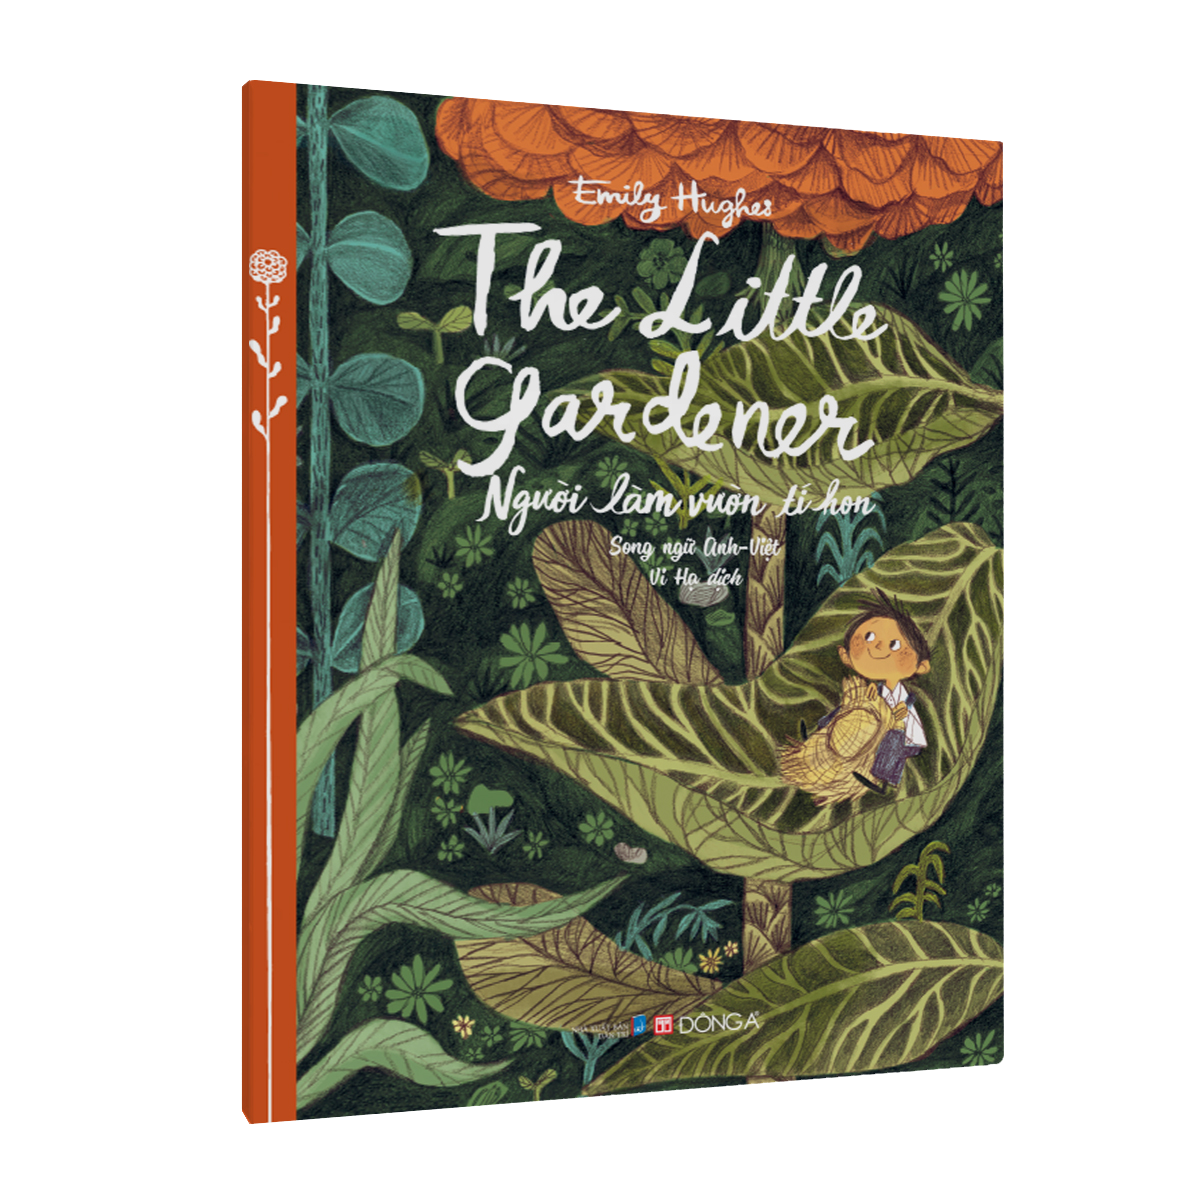 The Little Gardener - Người làm vườn tí hon (Song ngữ Anh - Việt)